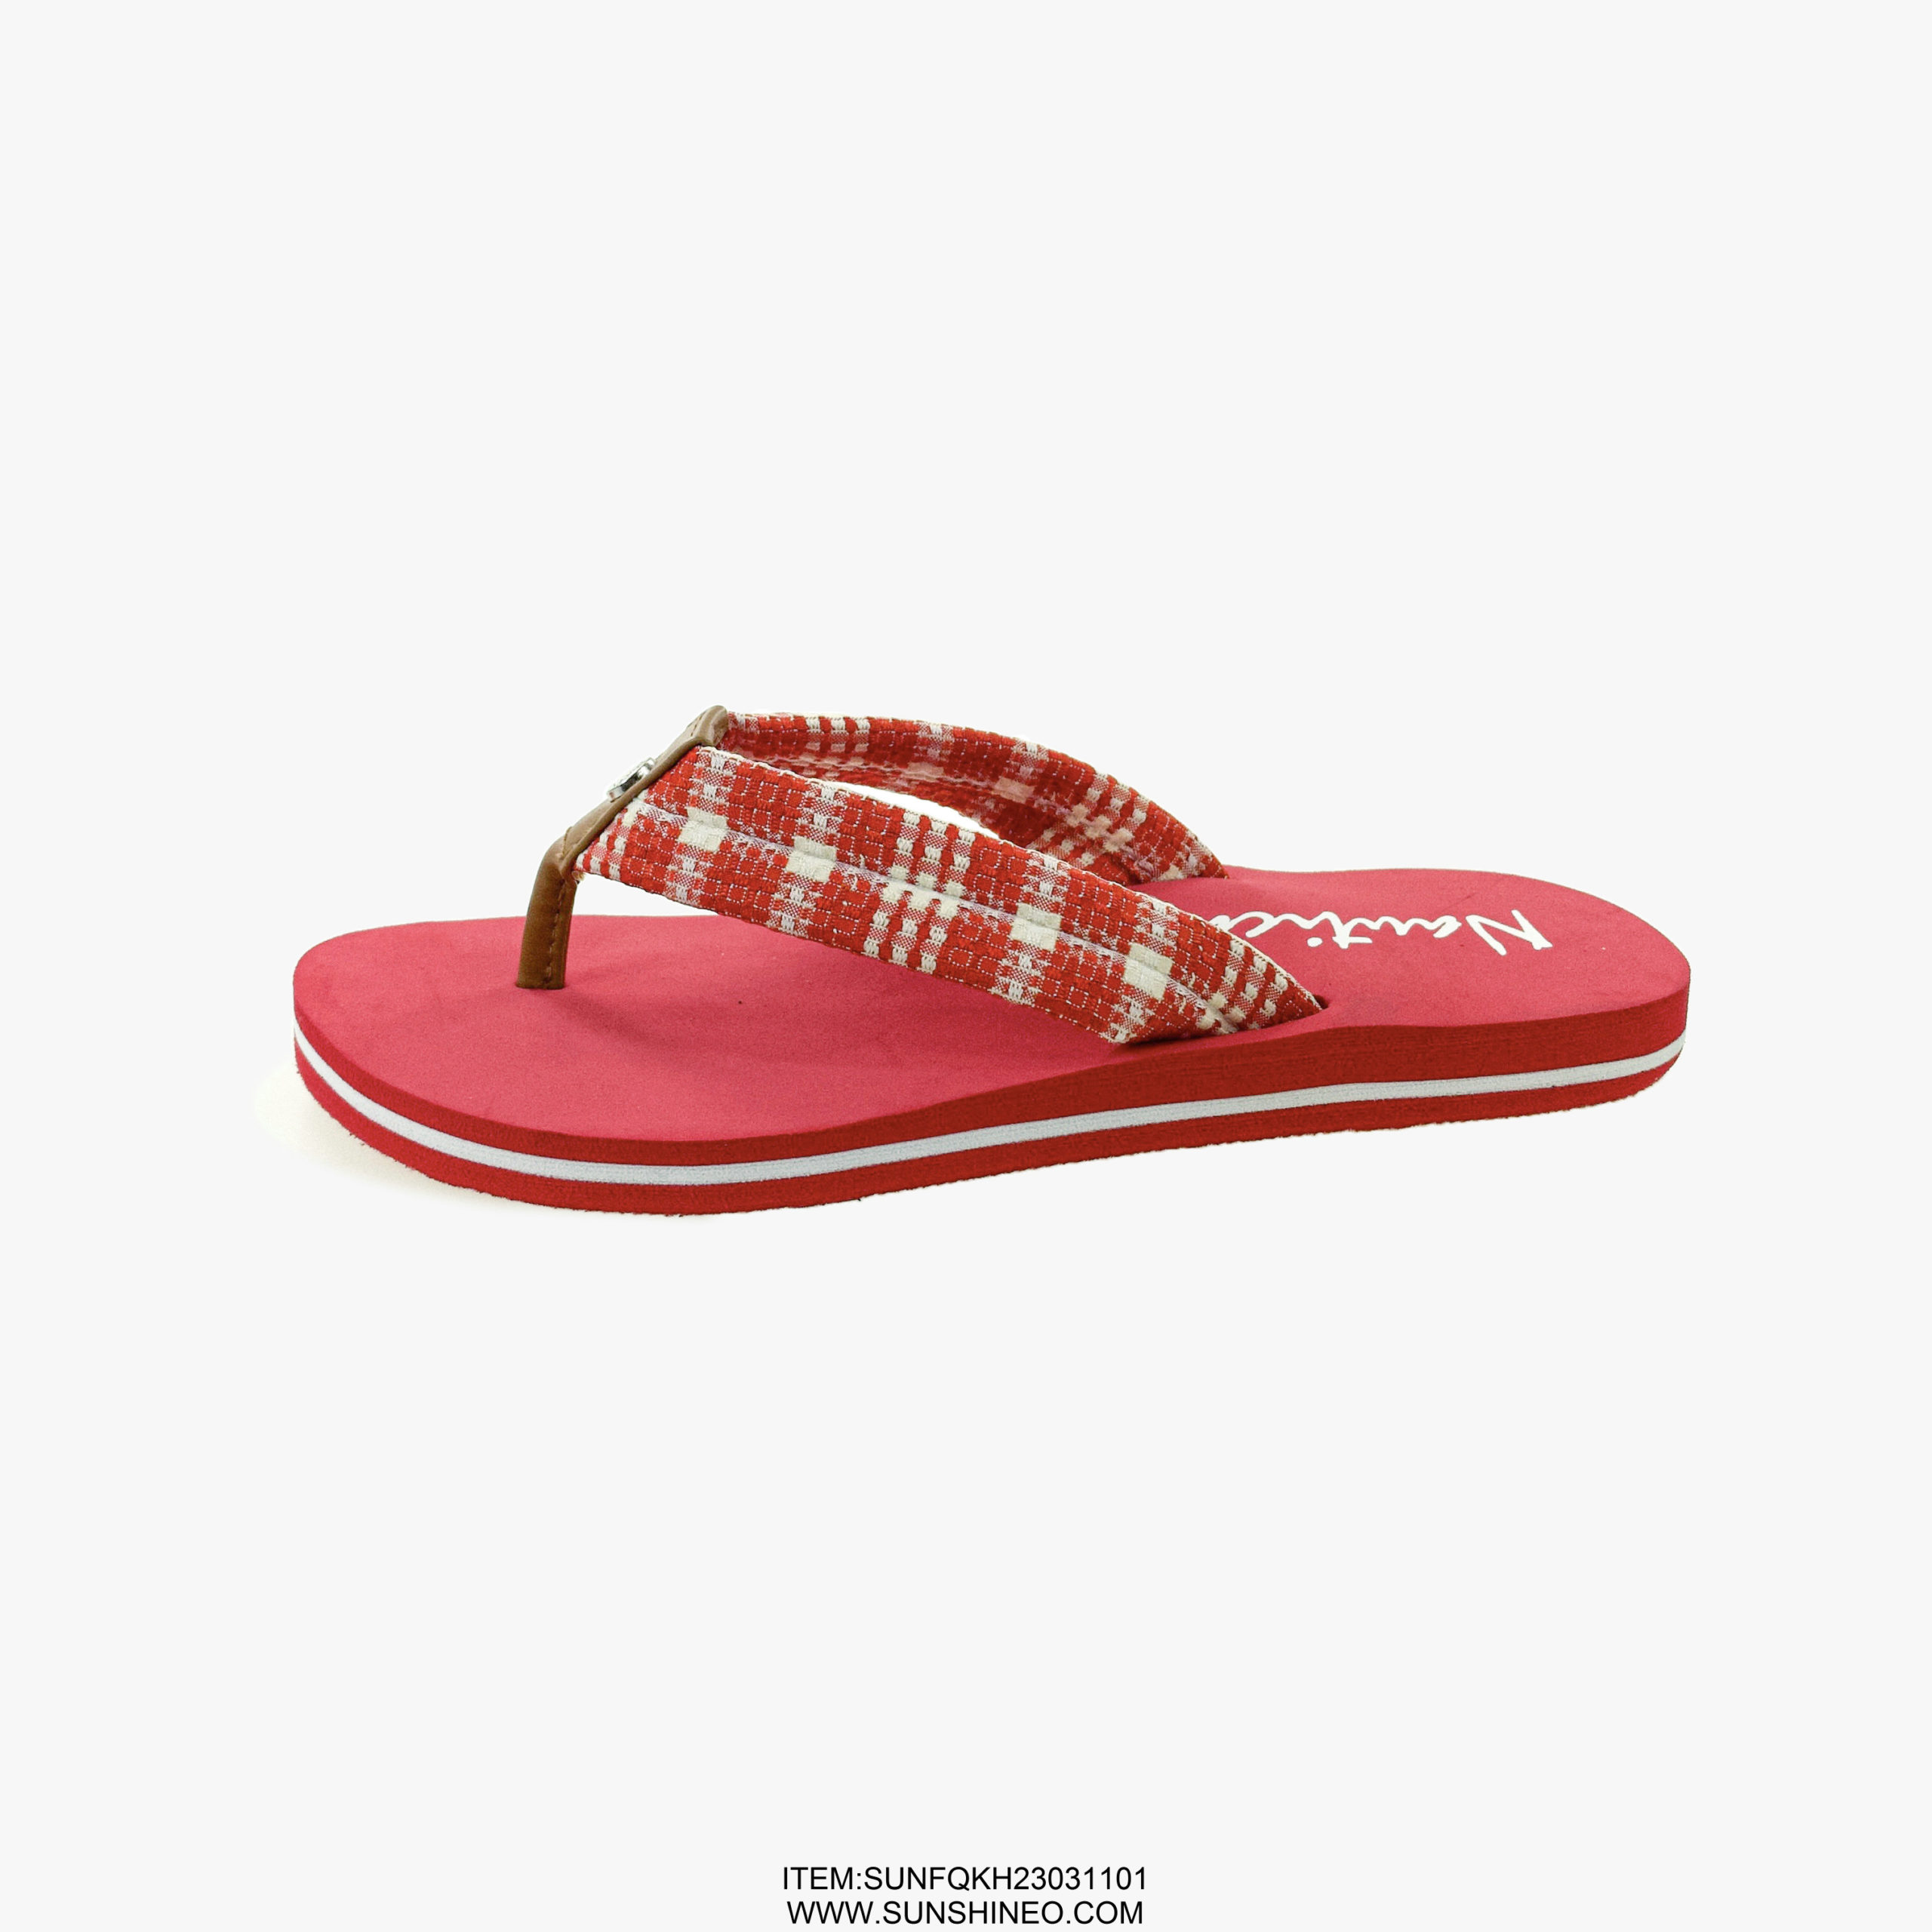 SUNFQKH23031101 flip flop sandals